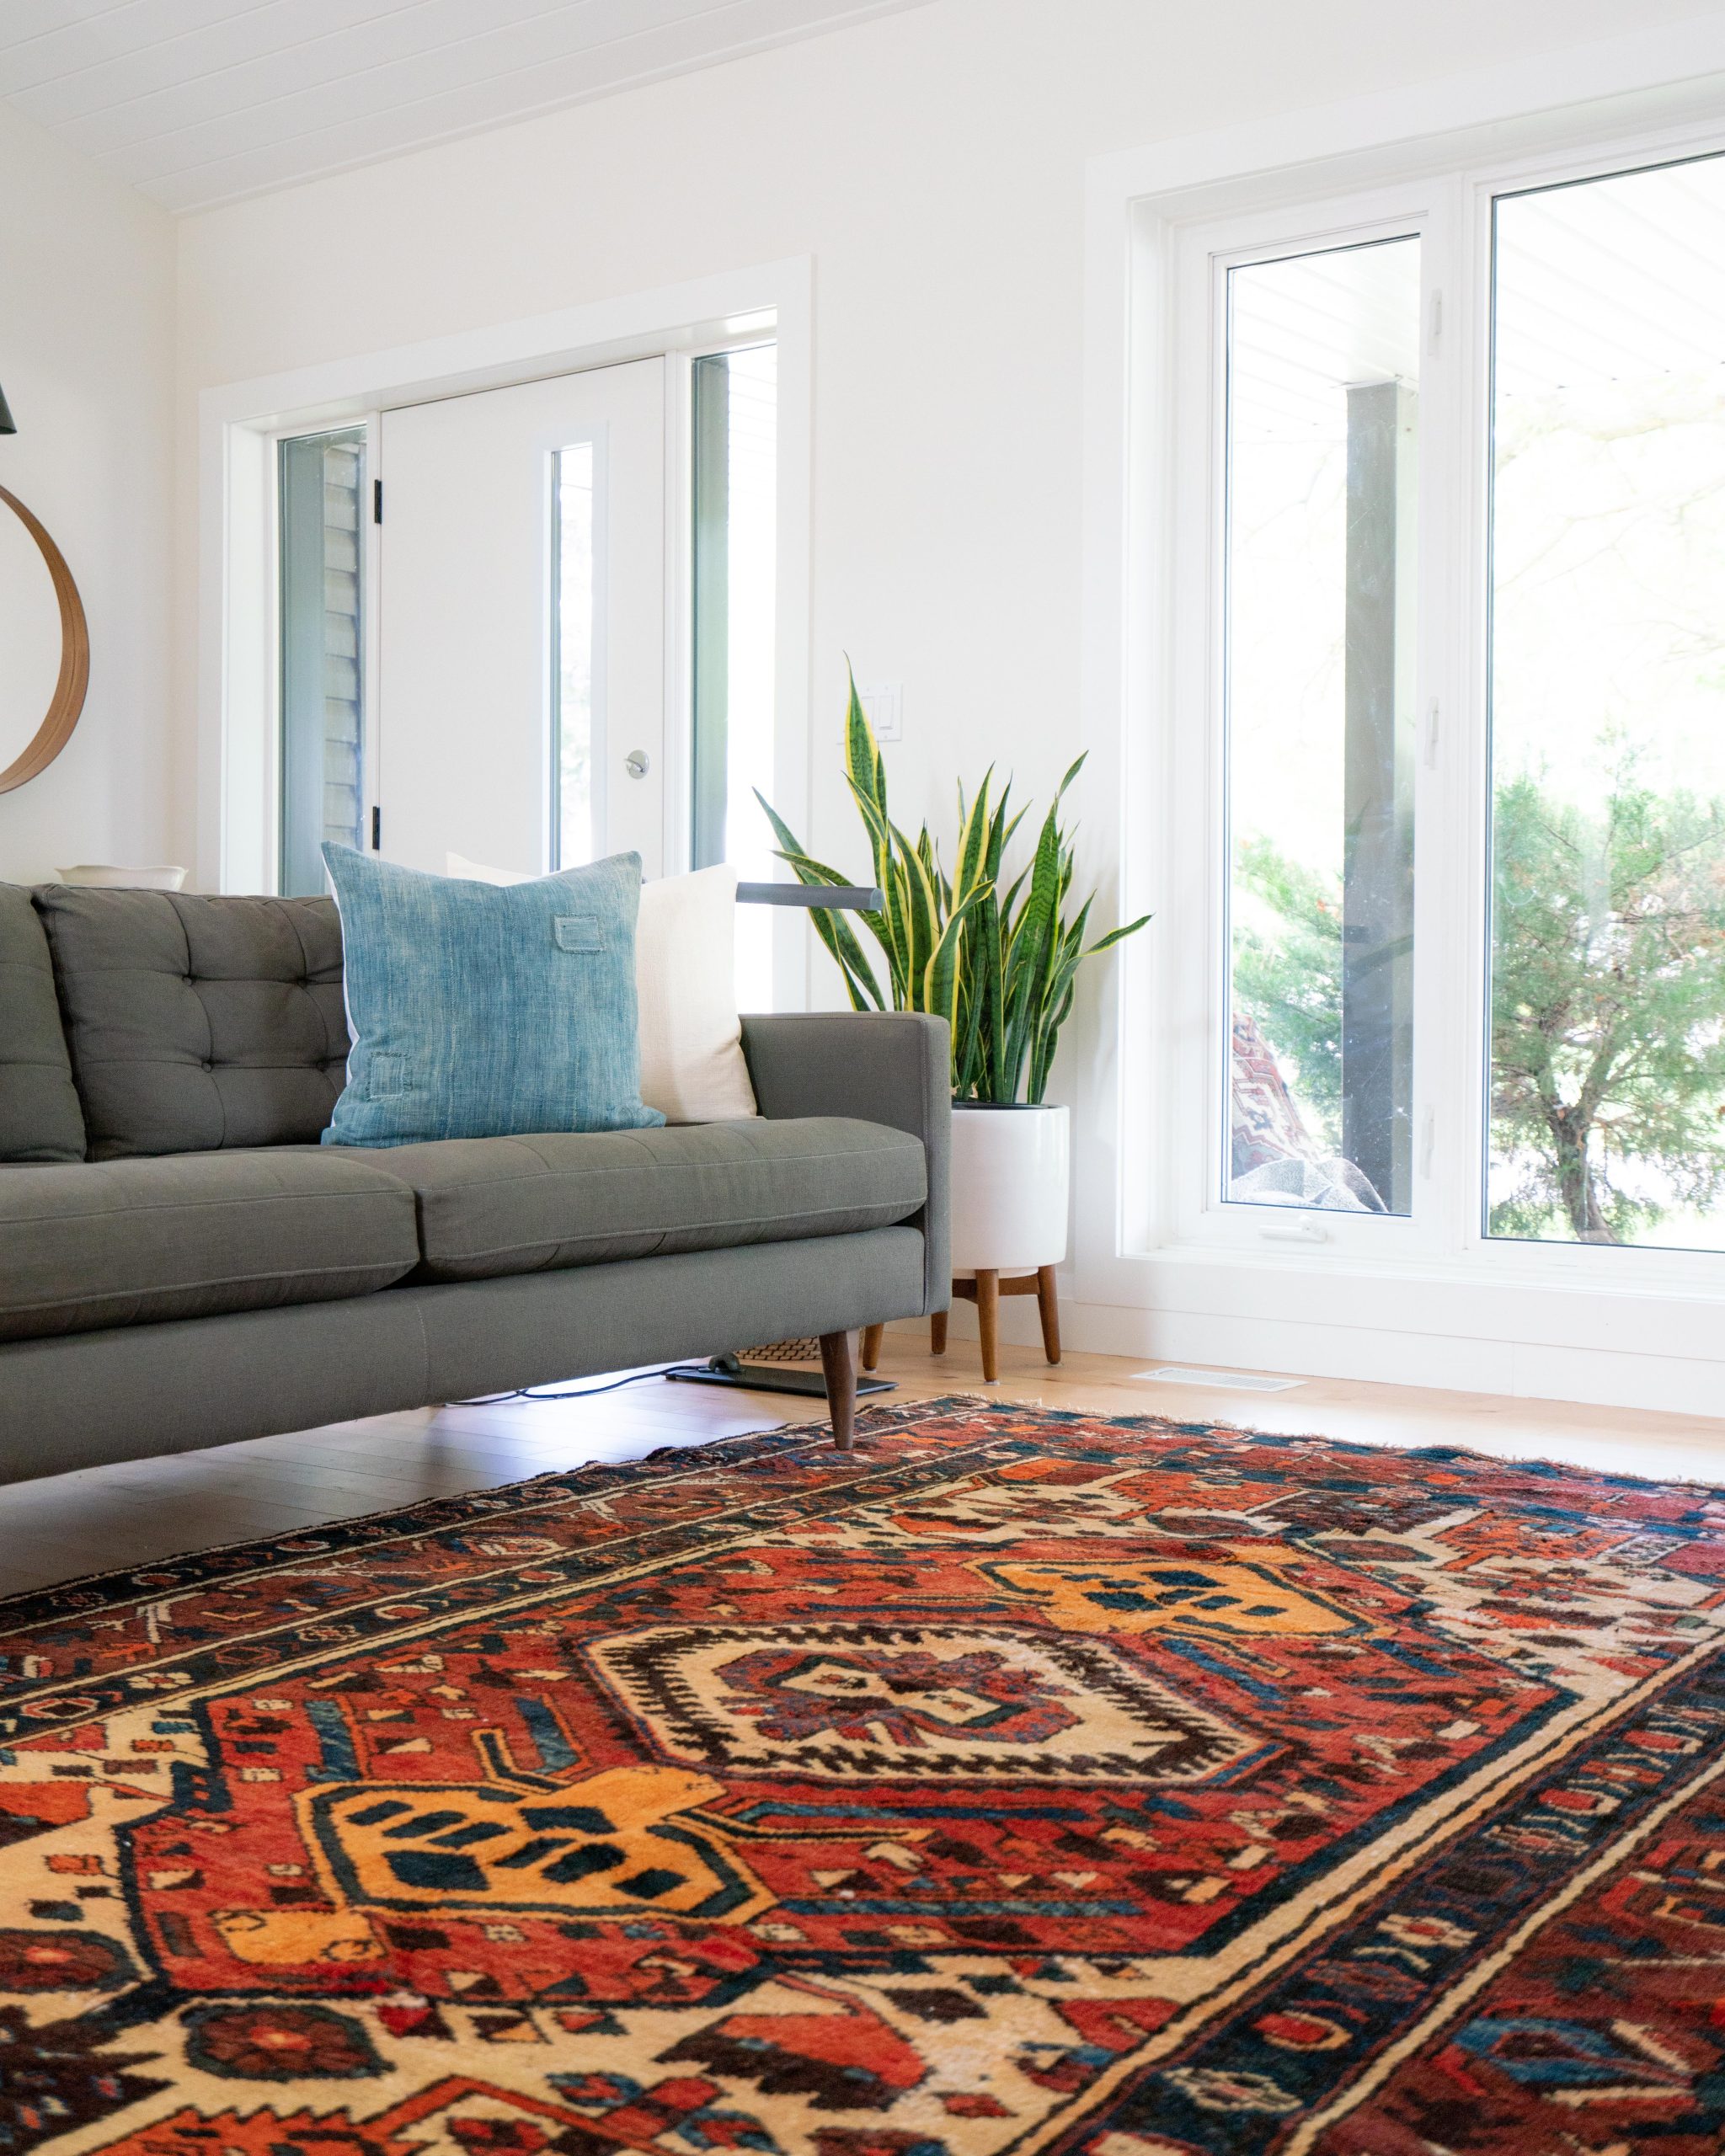 Teppiche können Farbe und Muster in Ihr Interieur bringen